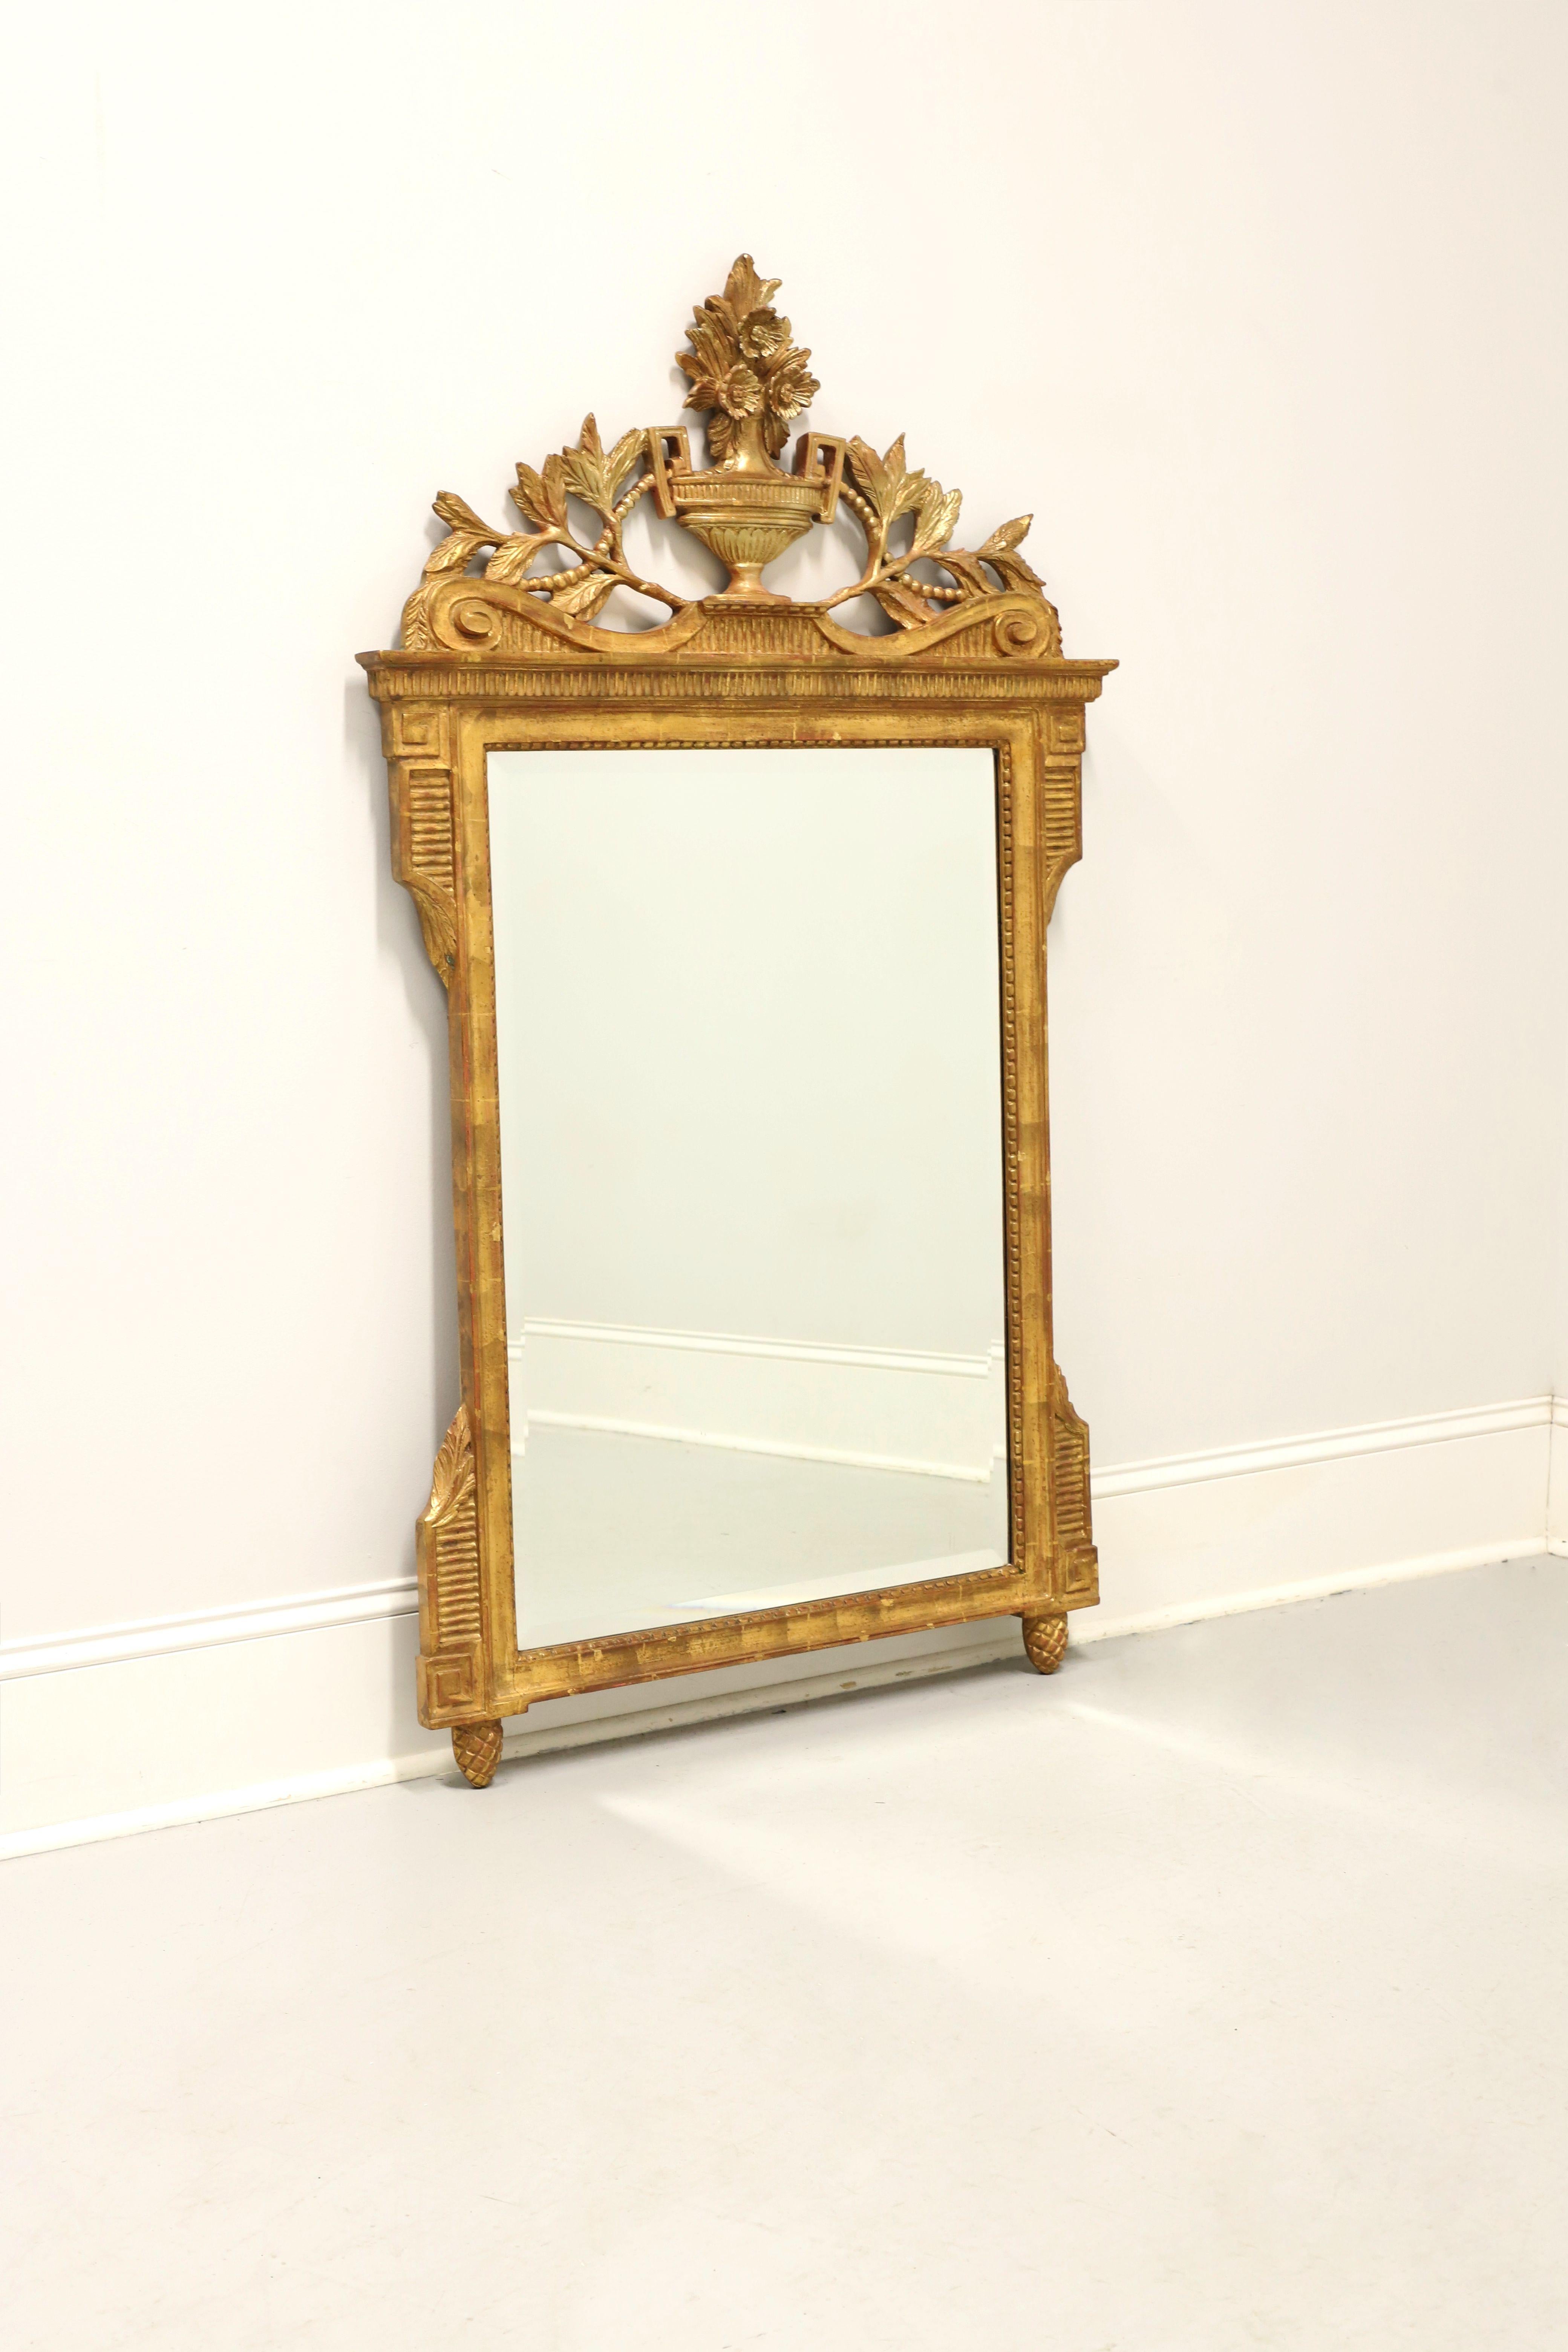 Ein Wandspiegel im neoklassischen Stil, ohne Marke. Abgeschrägtes Spiegelglas in einem verschnörkelten, vergoldeten Verbundrahmen mit architektonischen Designelementen, Holzblattwerkverzierung oben, Urne mit Blumenmotiv oben in der Mitte und